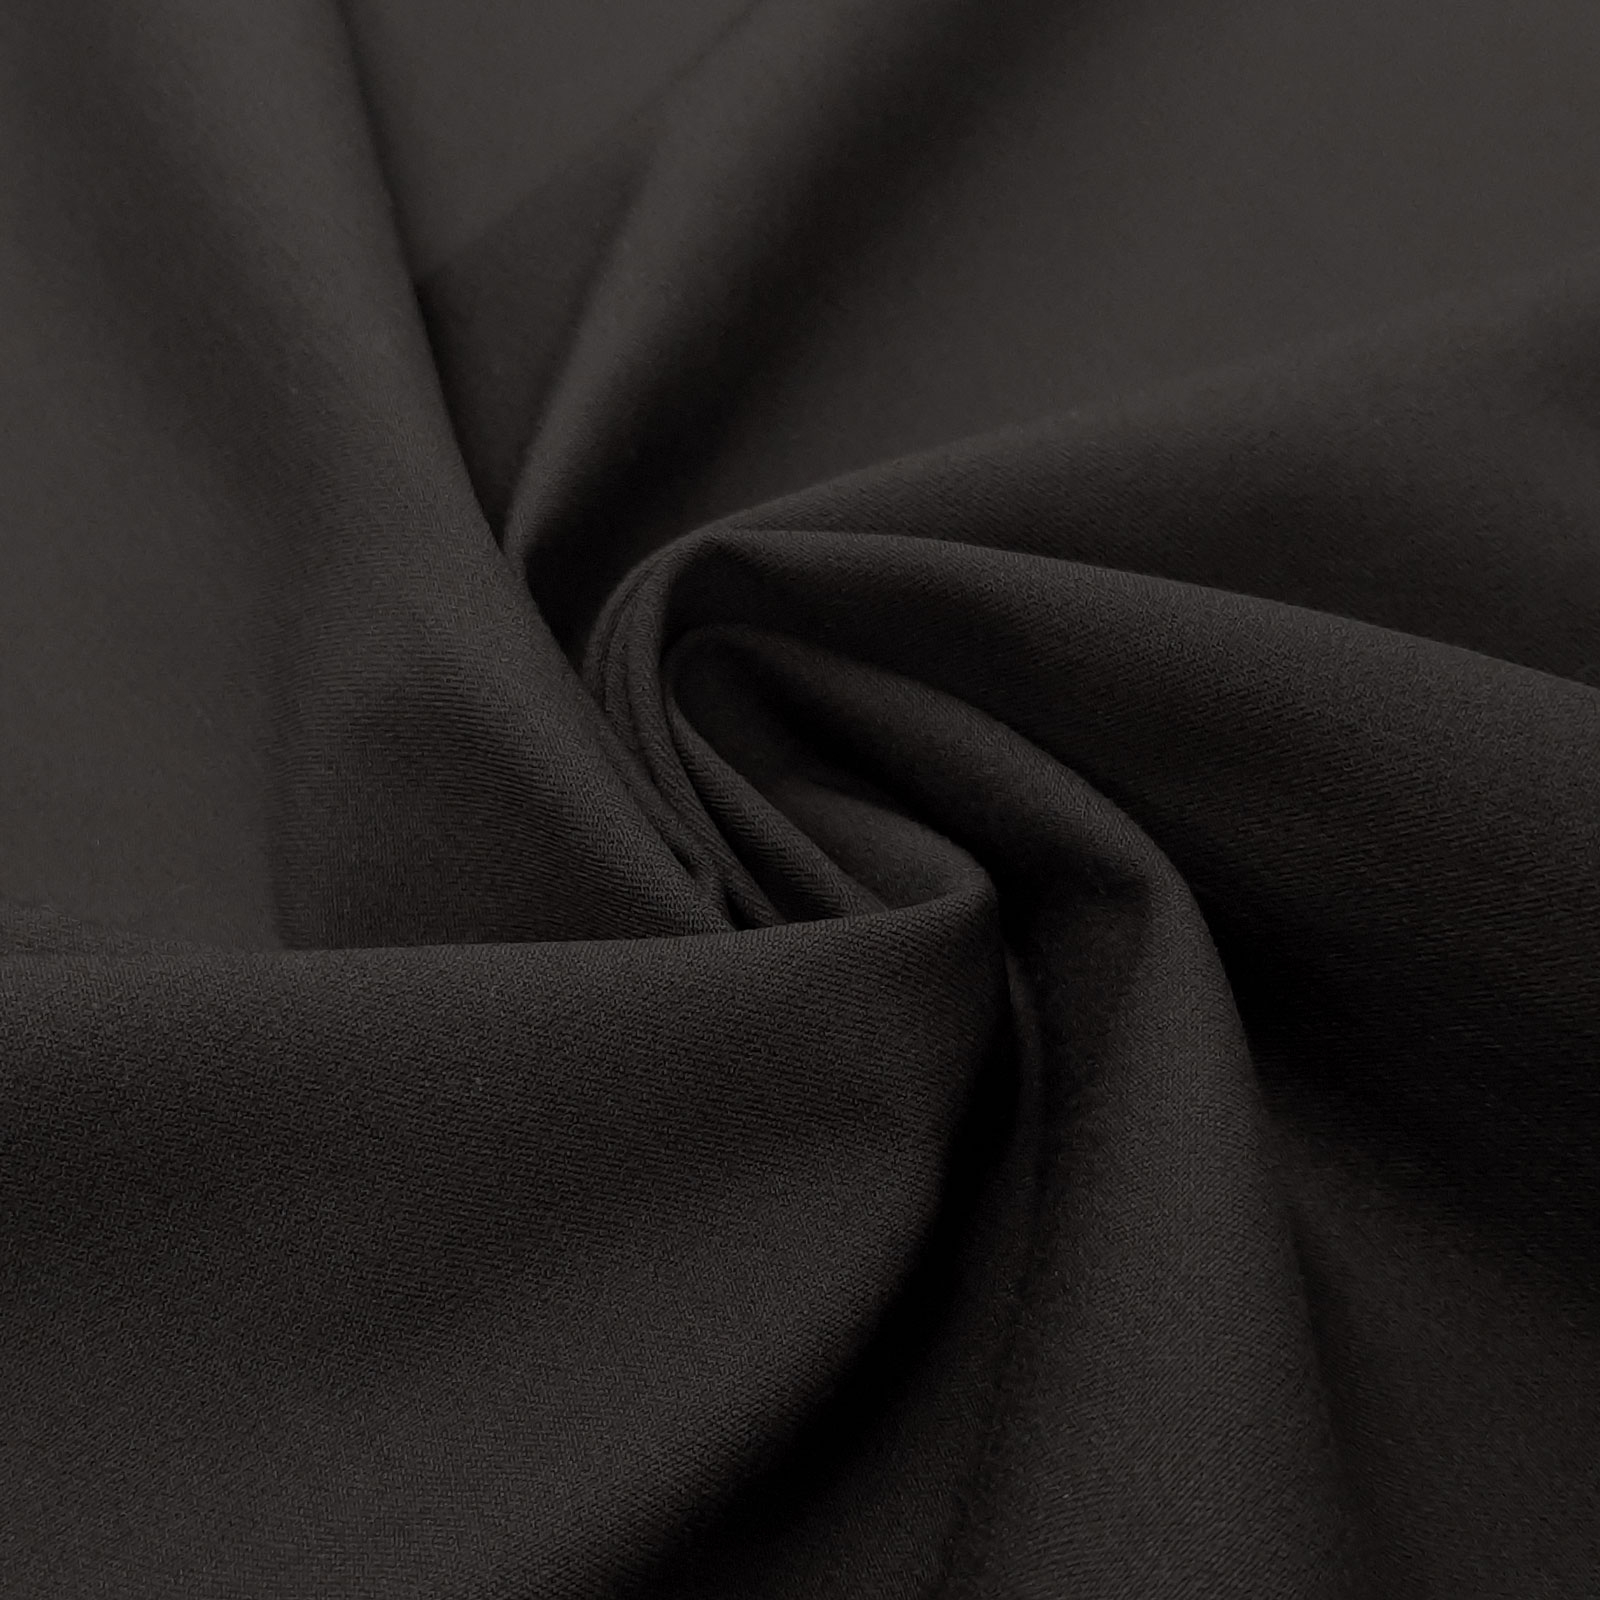 Egon - Tissu pour pantalons 4-Way-Stretch - Noir